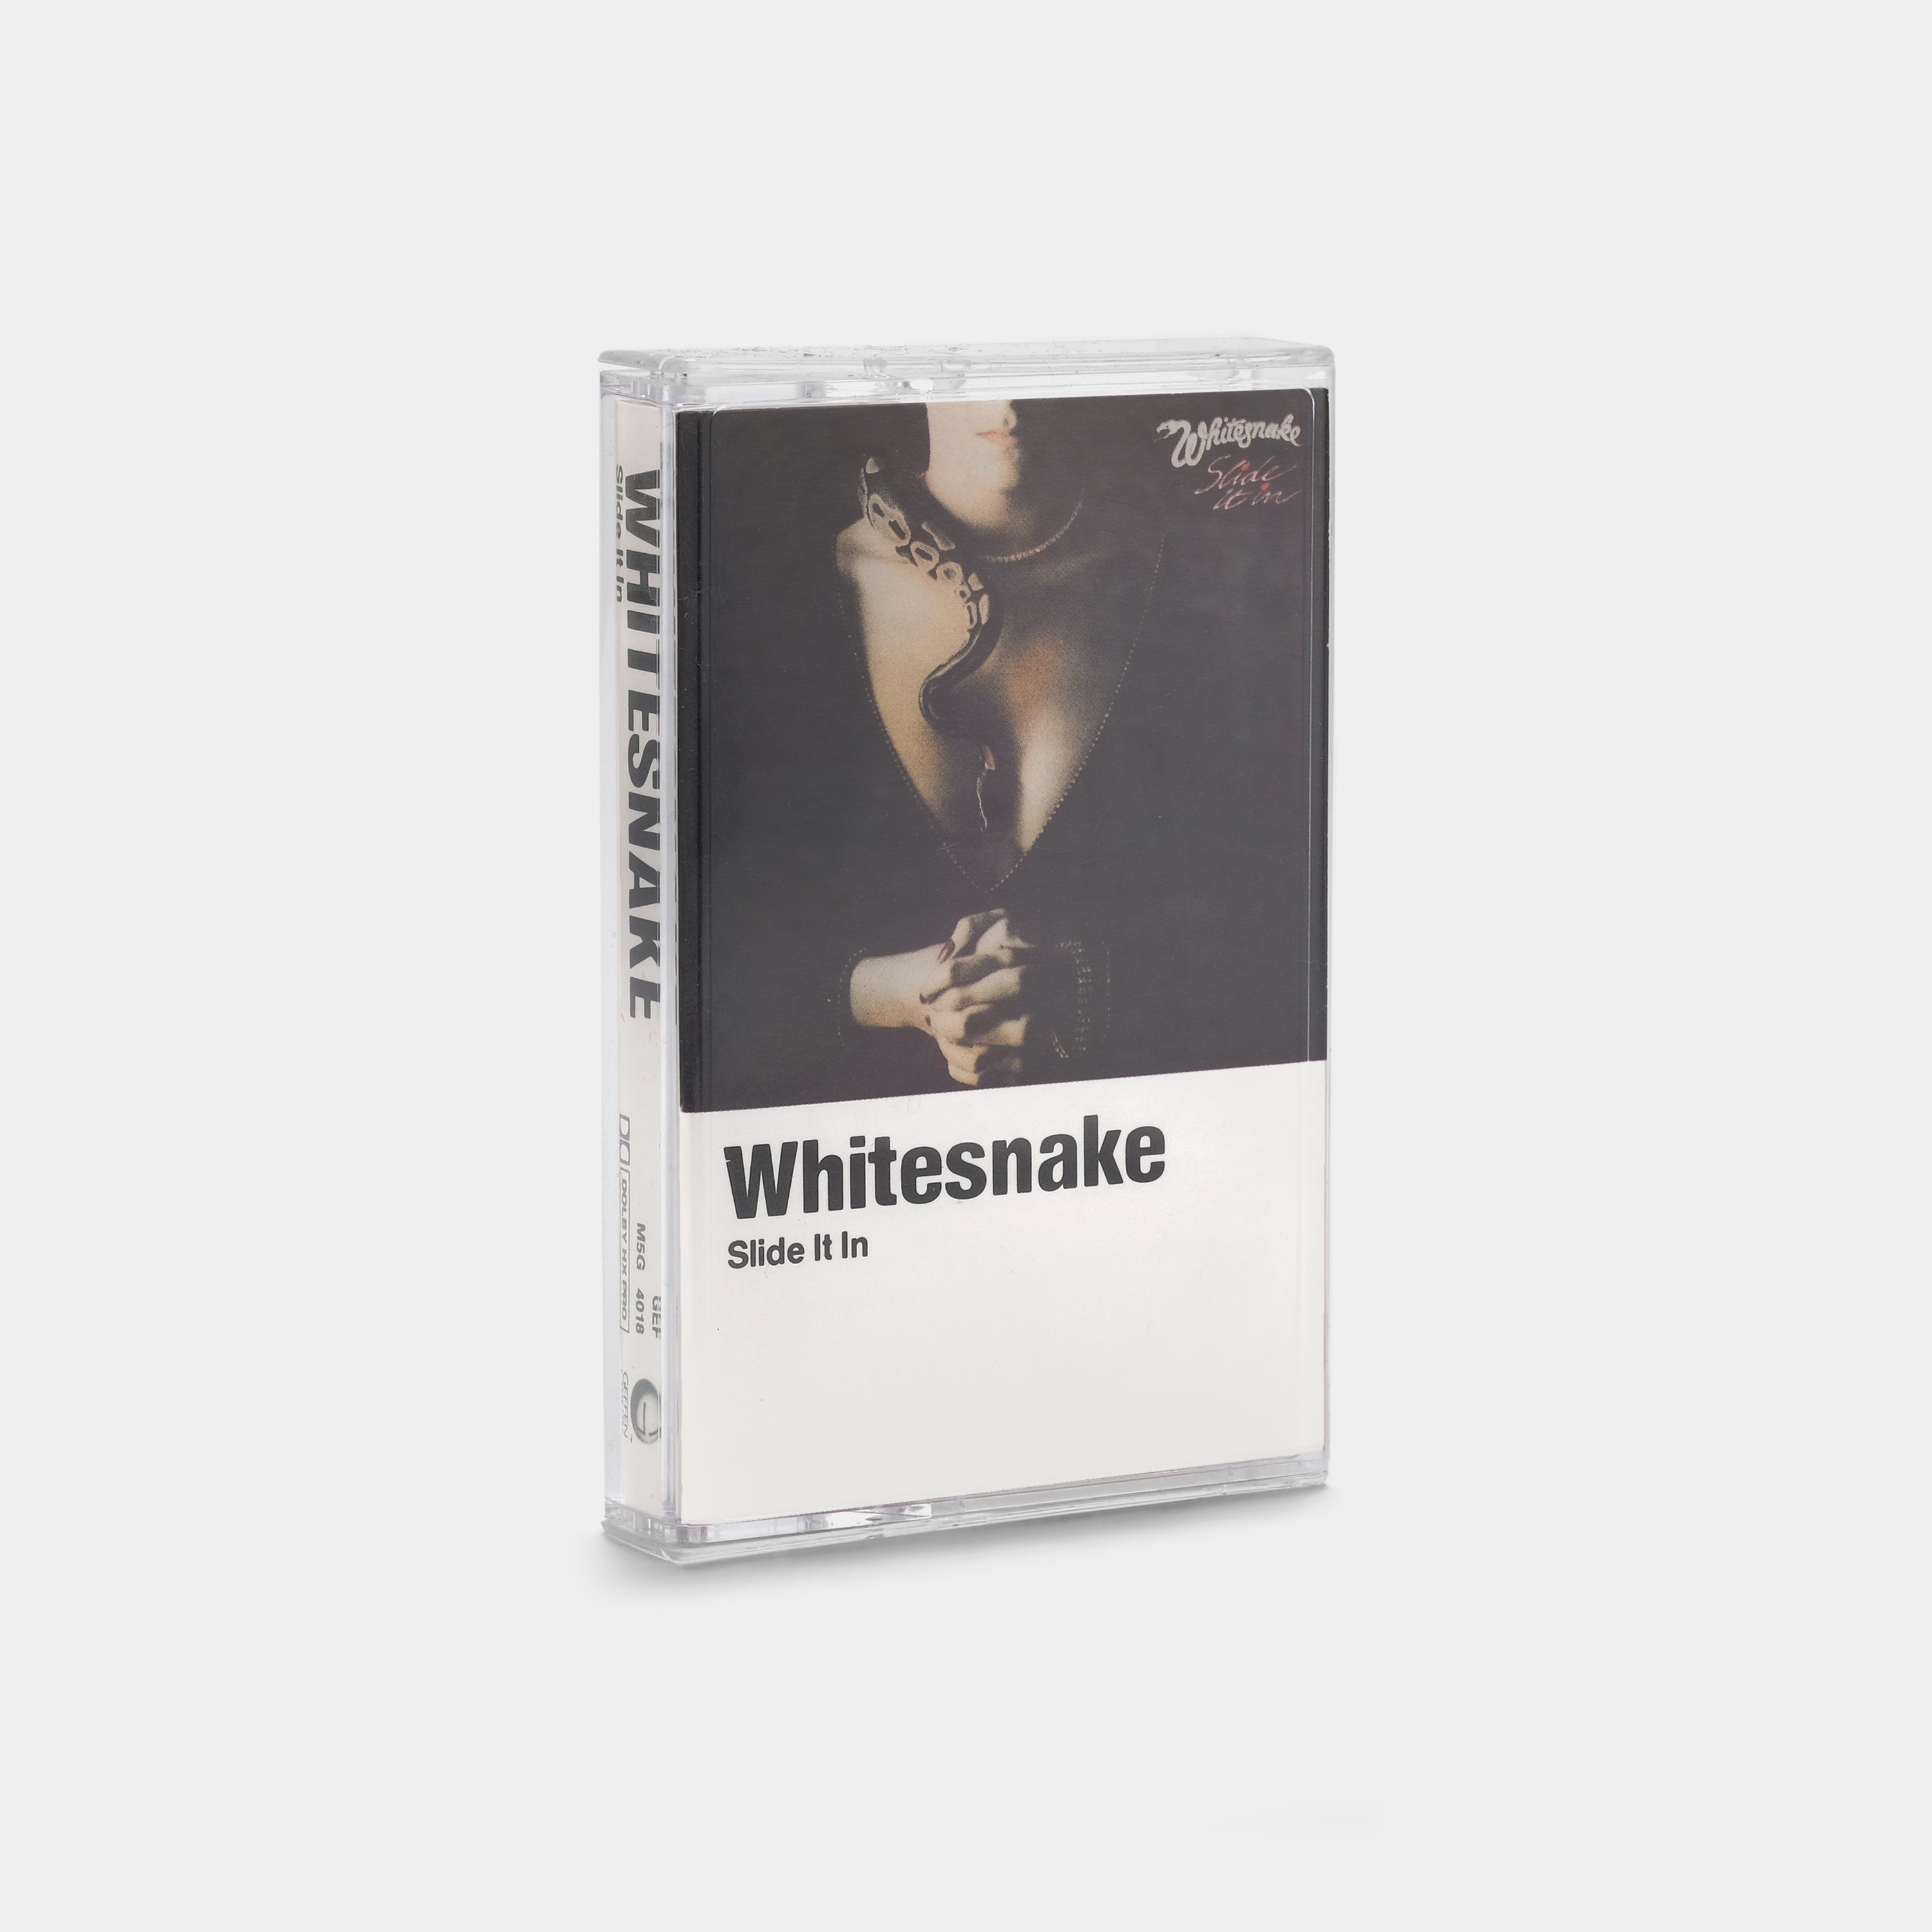 Whitesnake - Slide It In Cassette Tape